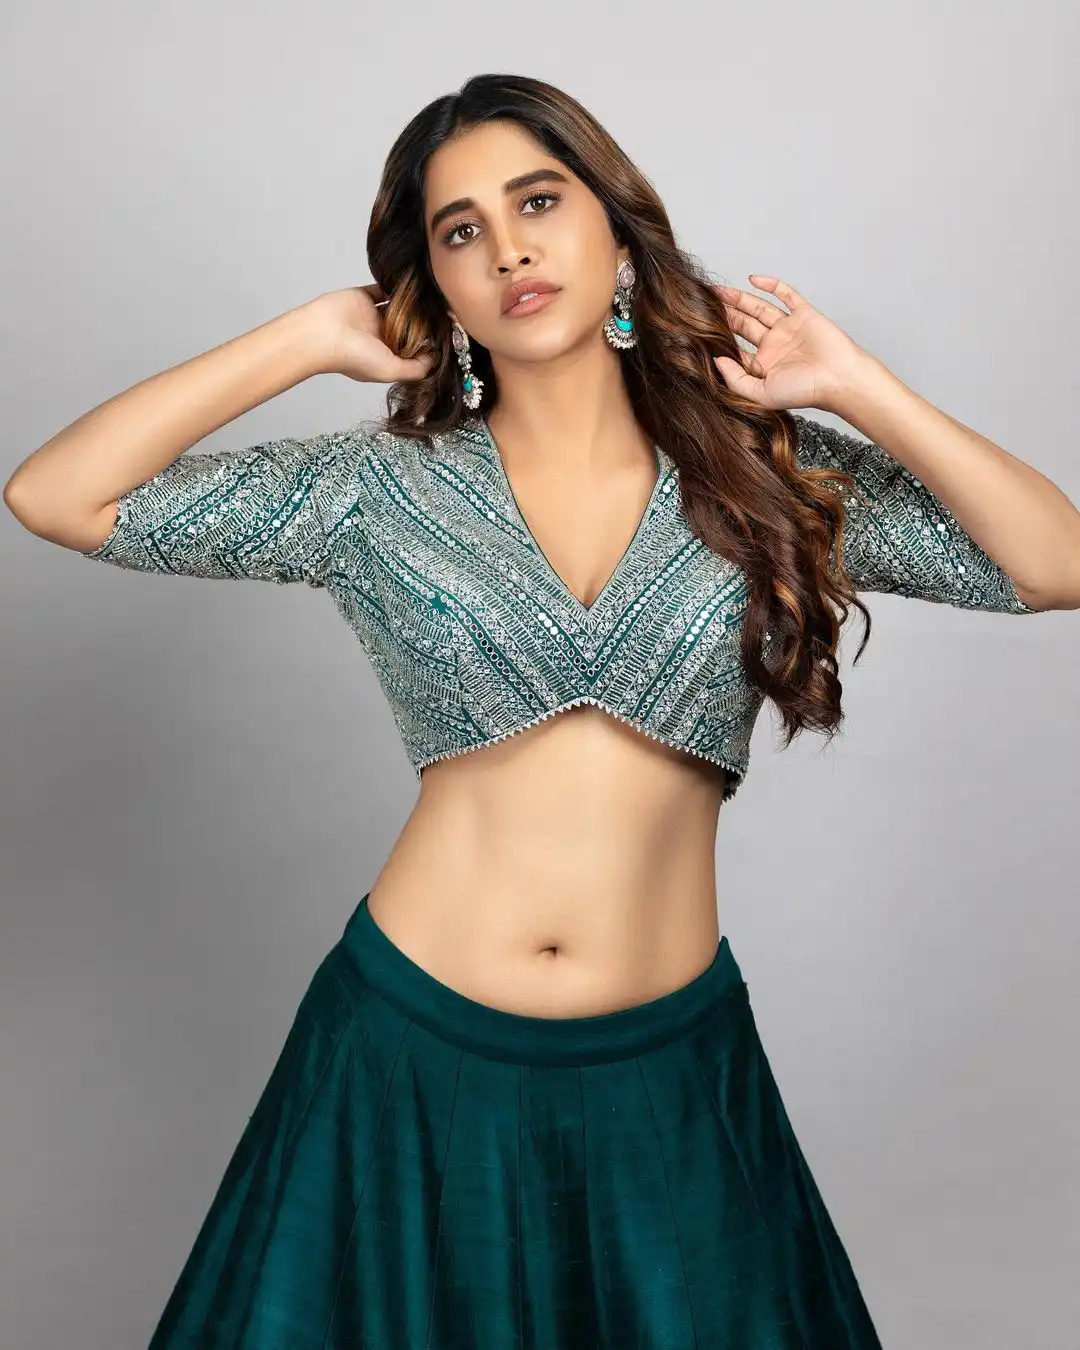 Nabha Natesh showing her beautiful waist